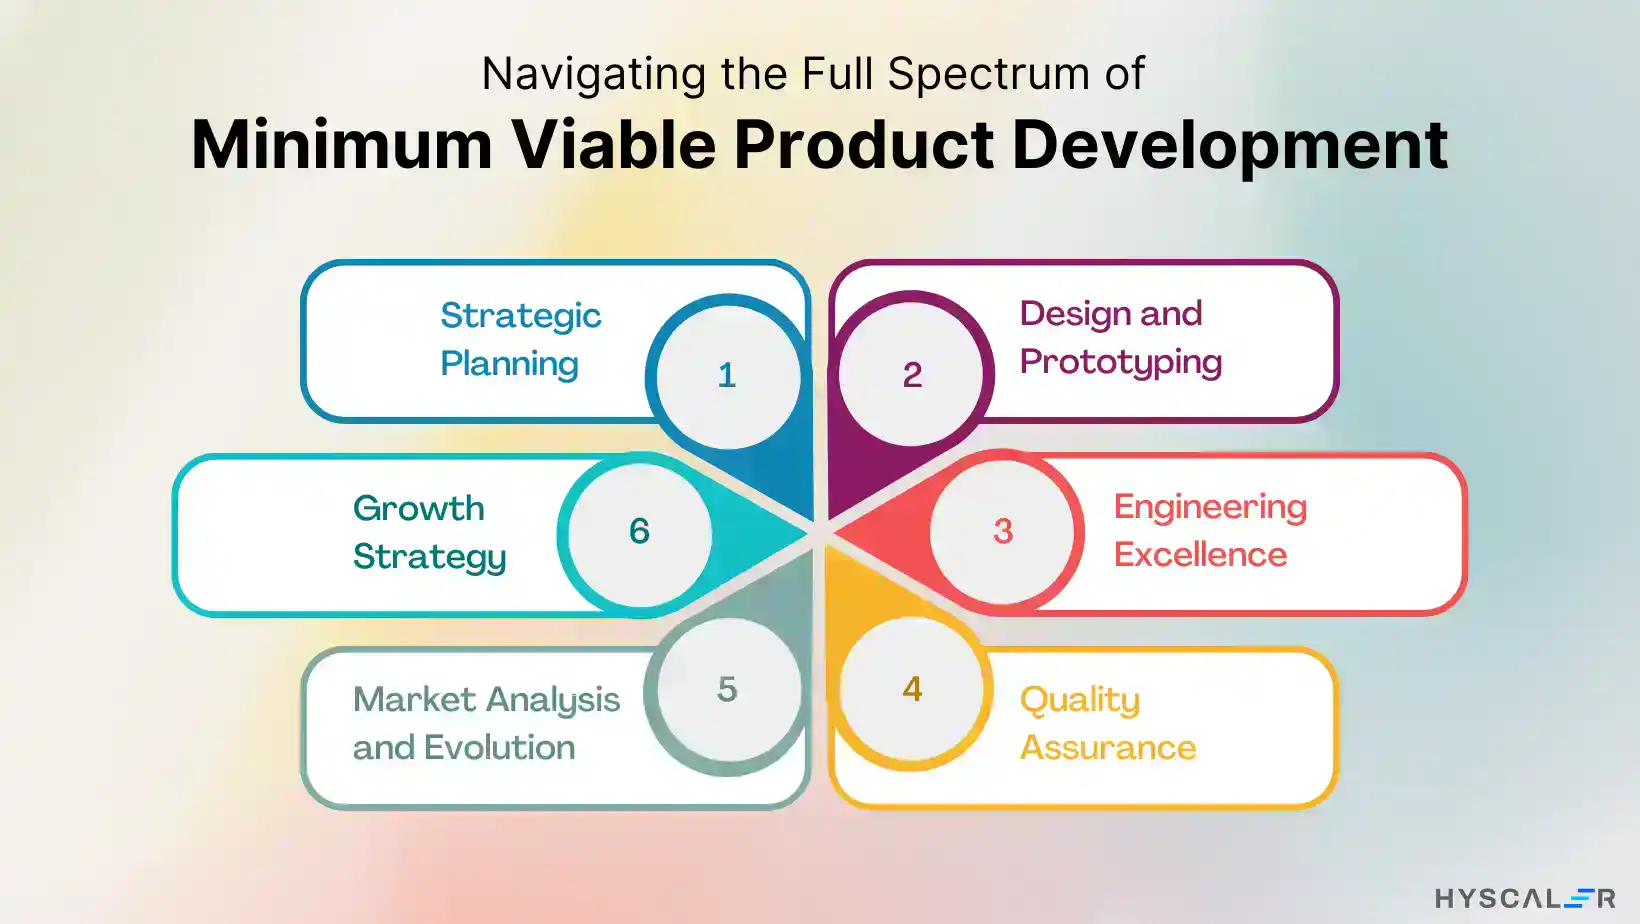 Minimum Viable Product Development steps